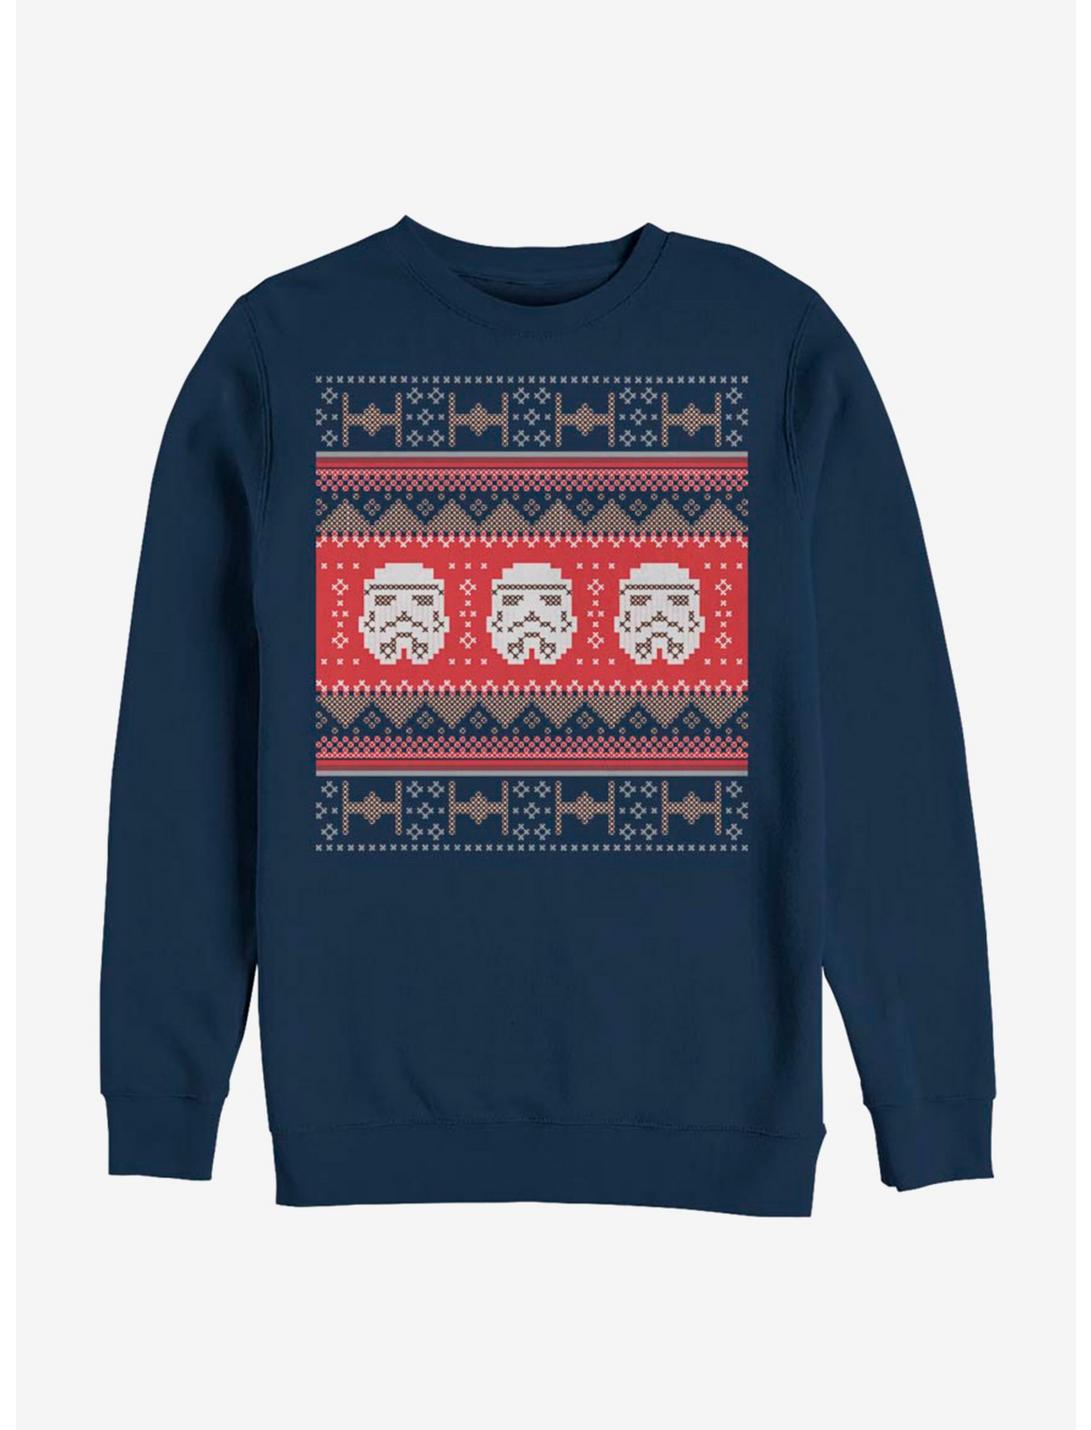 Star Wars Trooper Stitches Sweatshirt, NAVY, hi-res